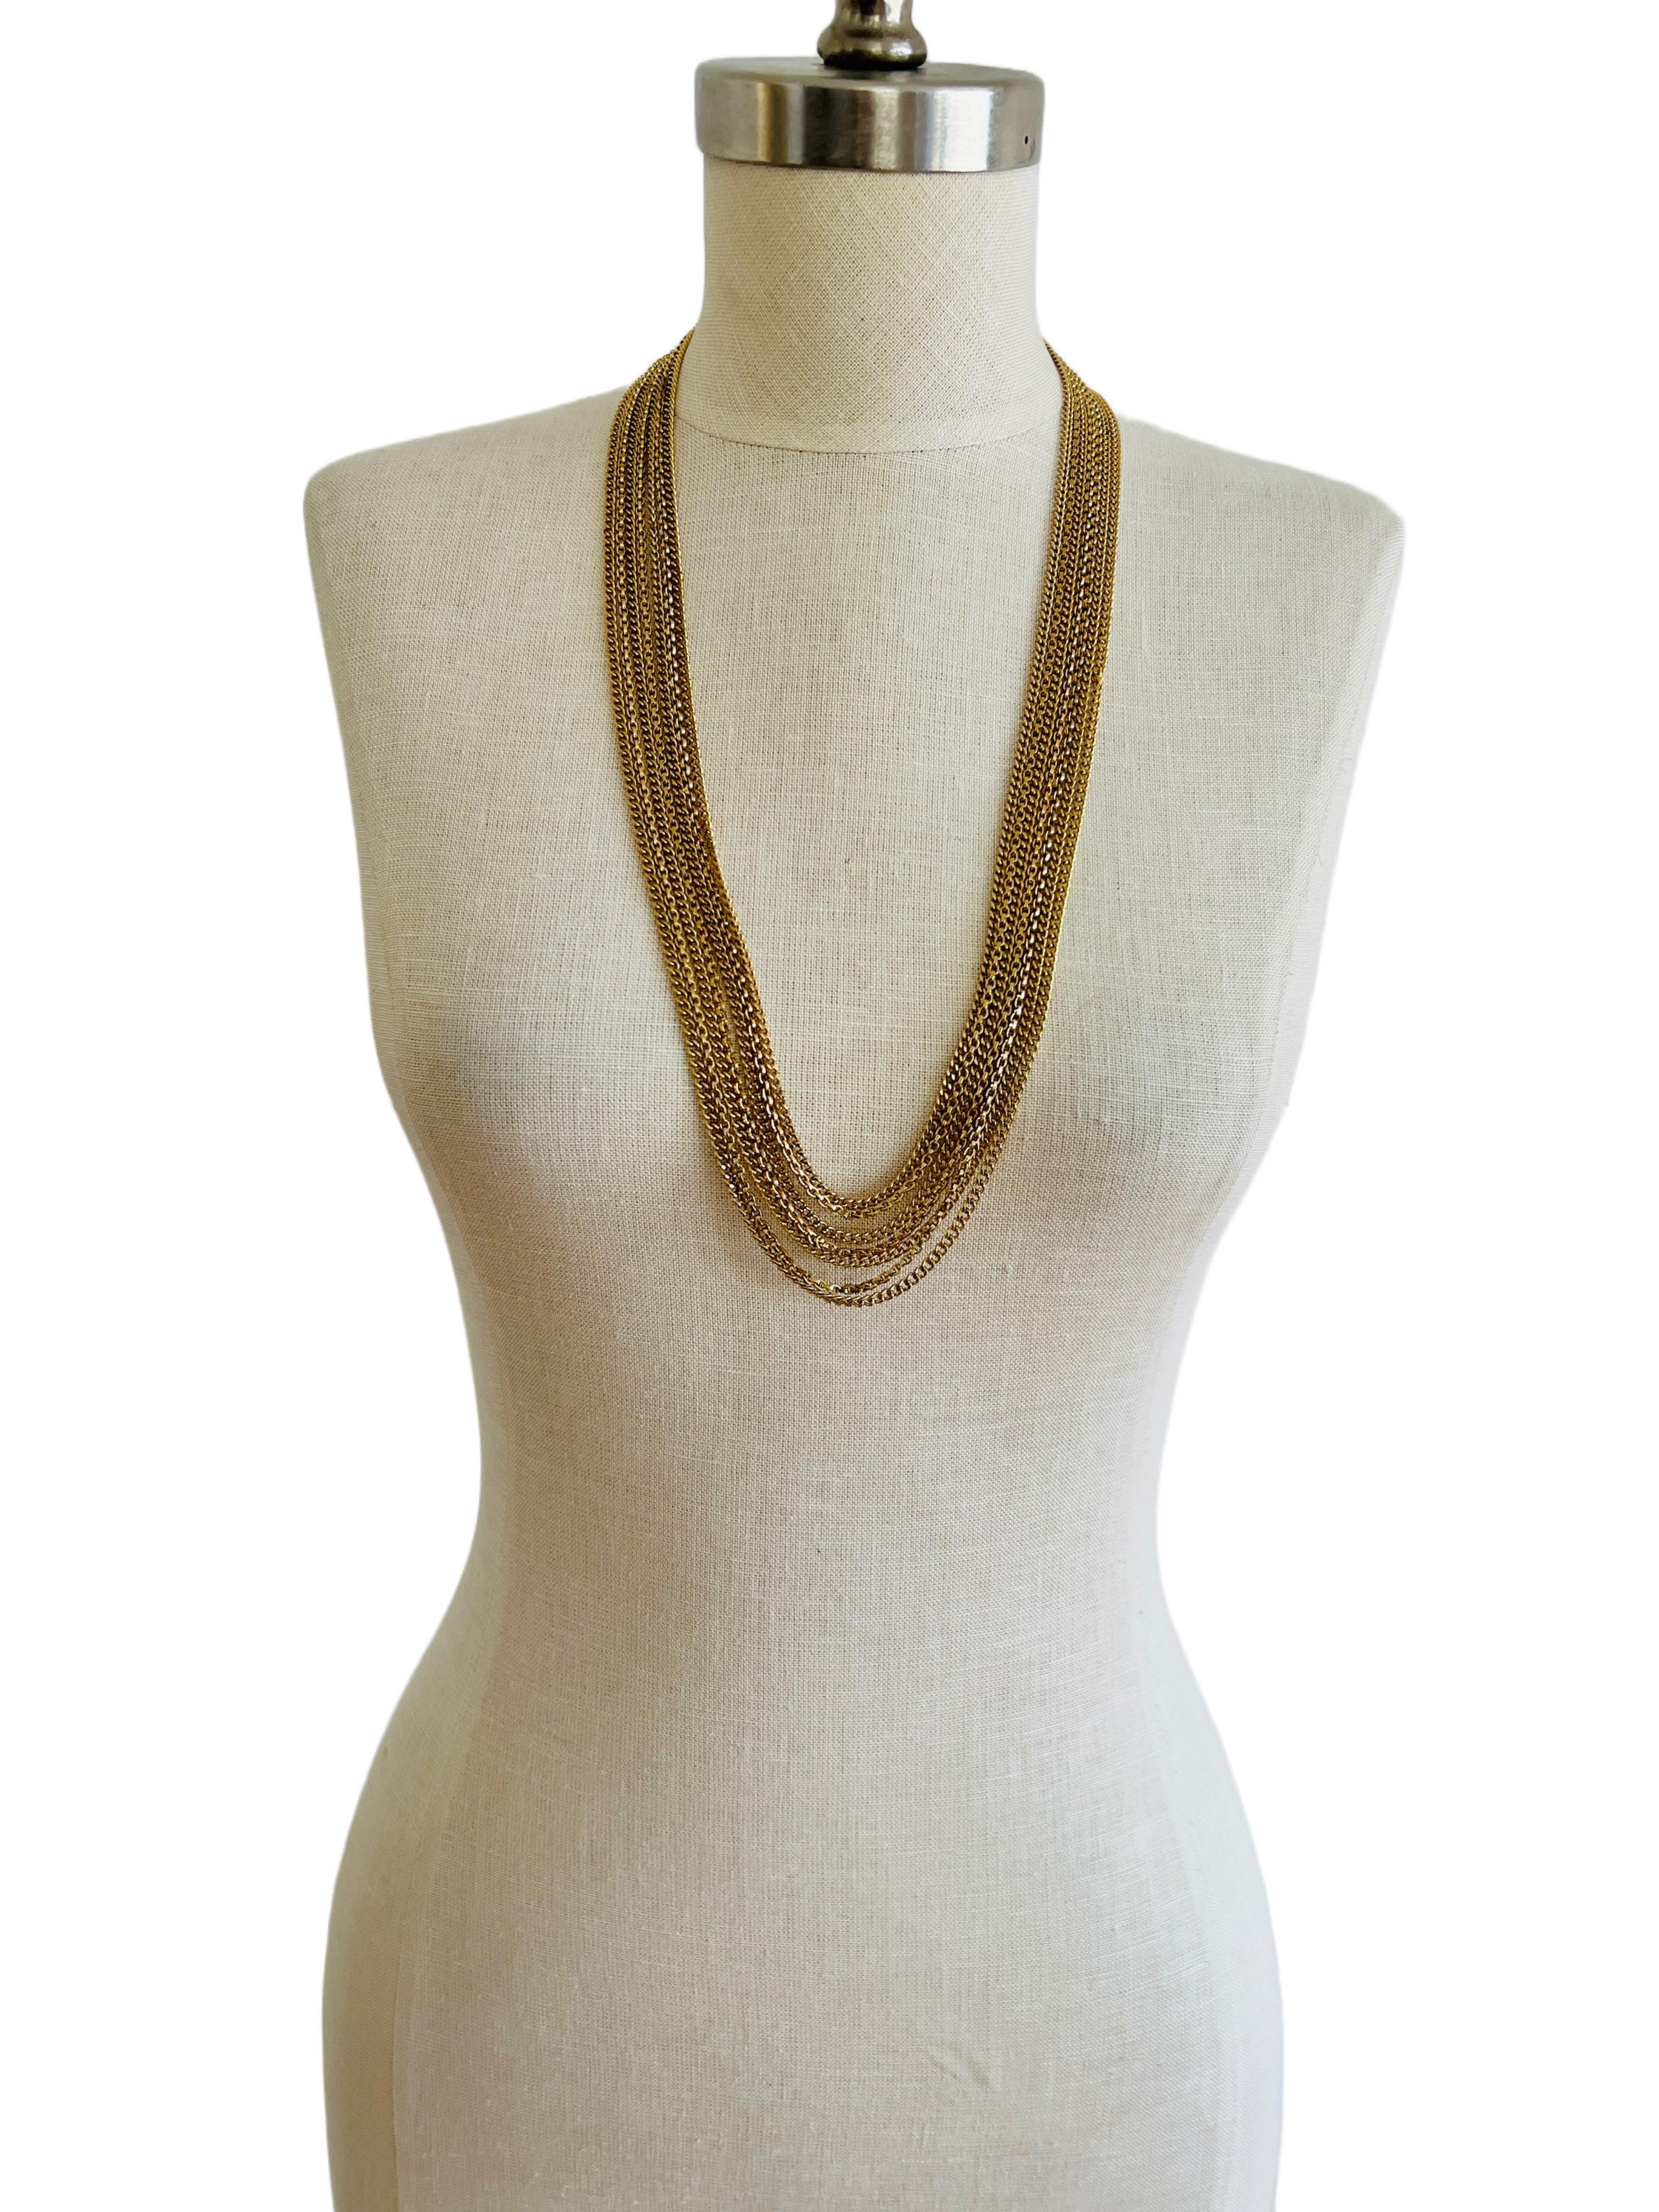 Diese fabelhafte Halskette von Crown Trifari besteht aus 7 vergoldeten Kettensträngen. Sie kann lang getragen werden, und wenn Sie einen sehr schmalen Hals haben, können Sie sie vielleicht sogar als Halsband tragen. Wenn du noch kreativer sein